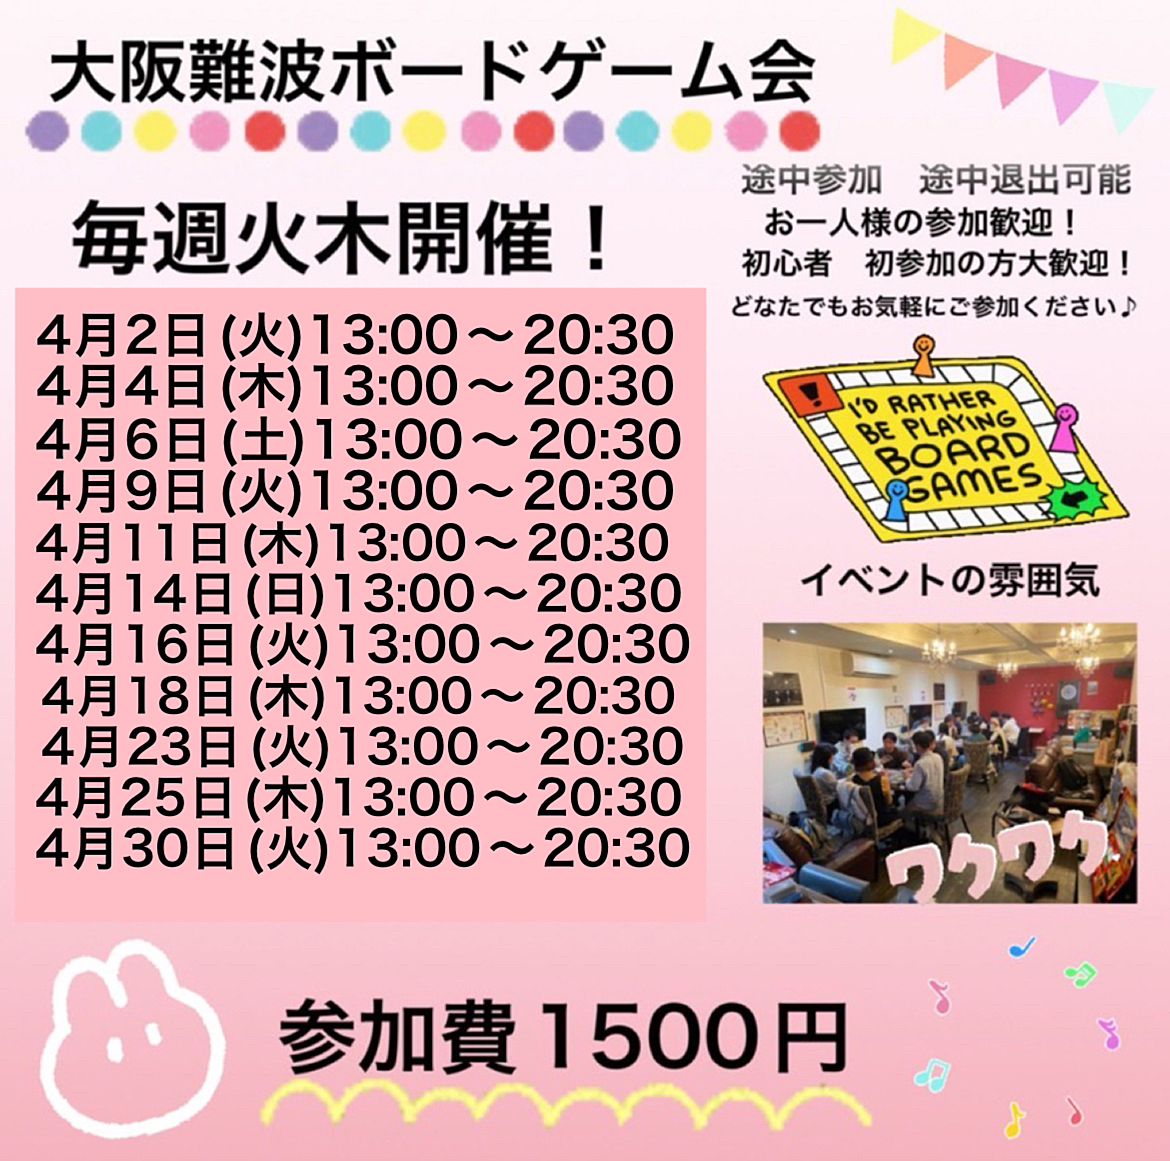 4月6日(土)大阪難波ボードゲーム会